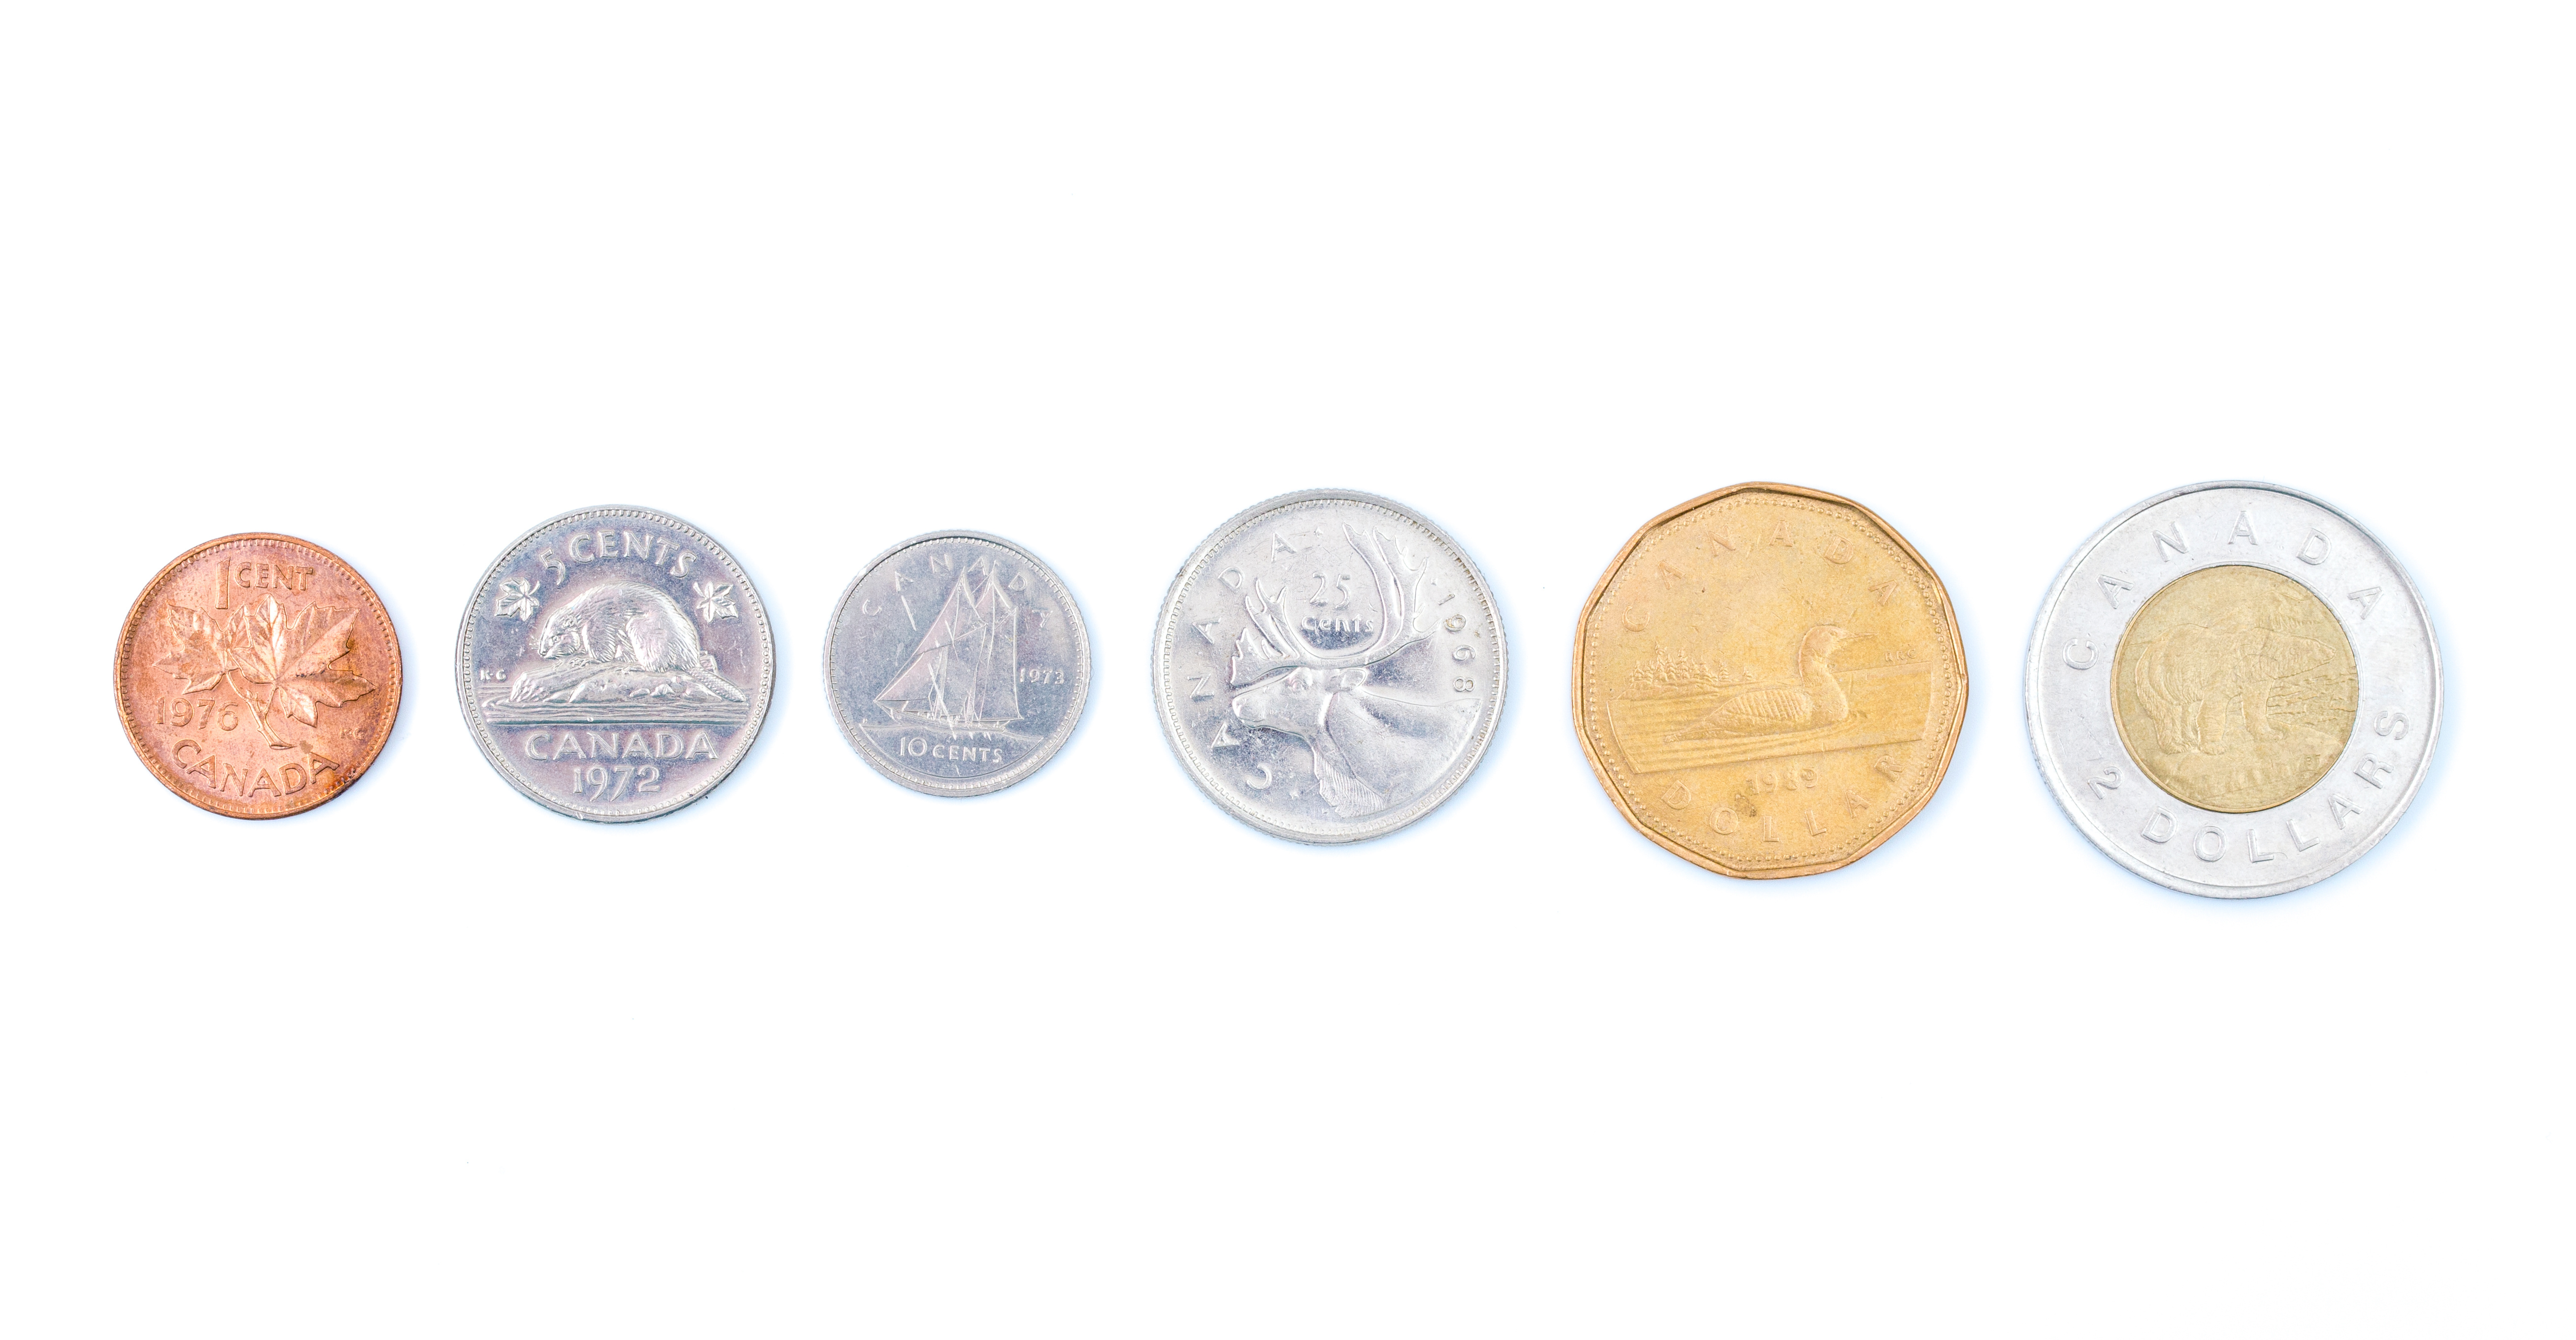 Les pièces de monnaie du Canada sont produites par la Monnaie royale canadienne et libellées en dollars canadiens ($) et en cents (¢), une sous-unité du dollar.